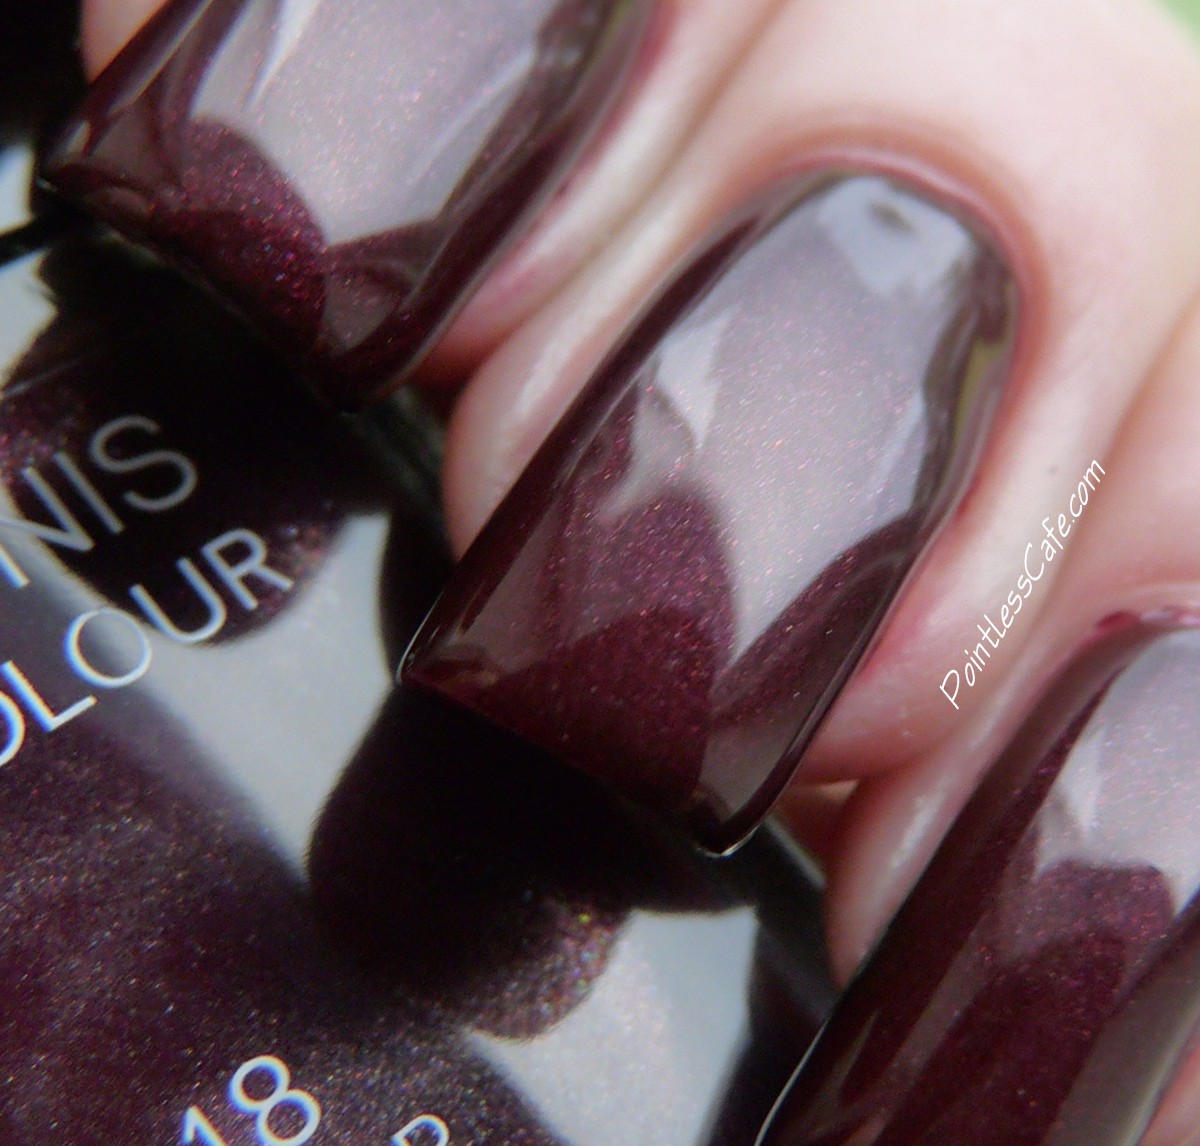 chanel nail polish 18 vamp